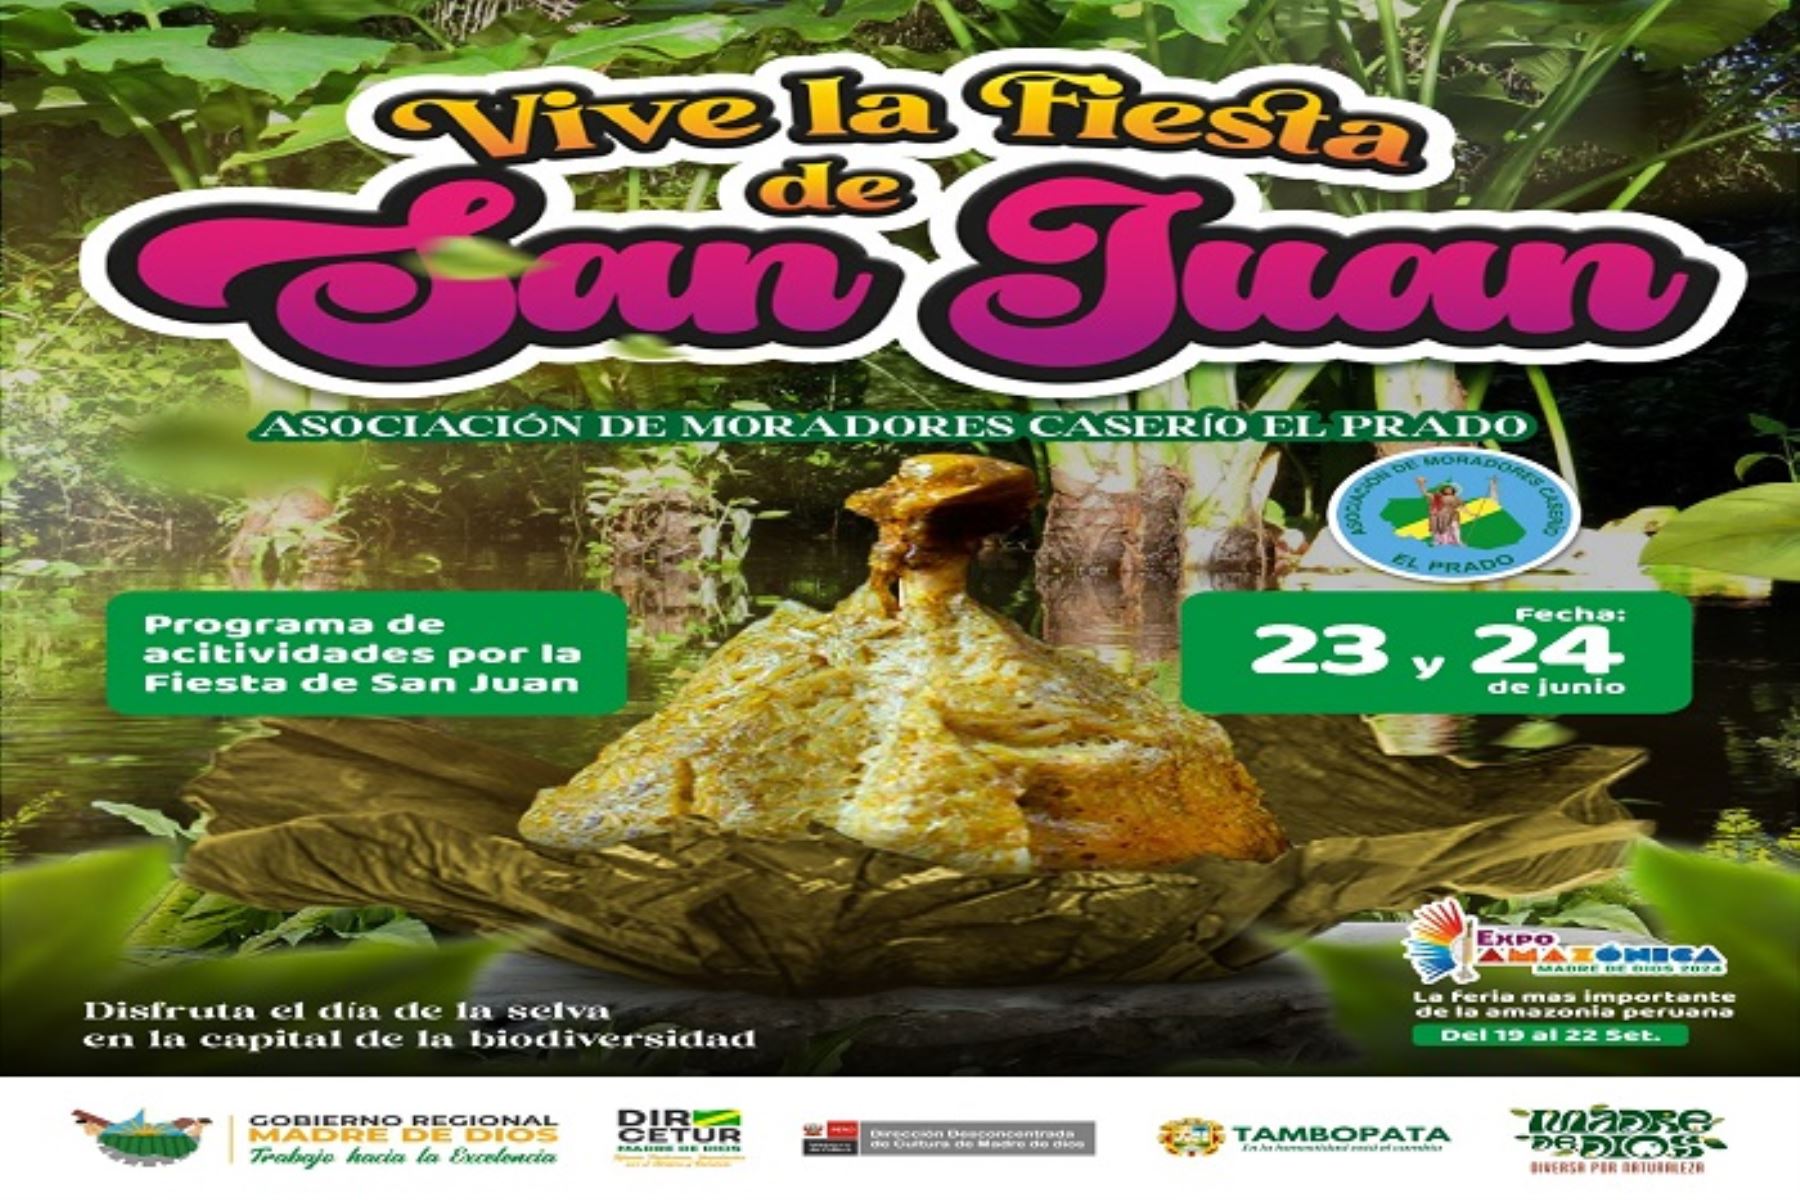 El turismo crece en Madre de Dios y espera 25,000 turistas en fiesta de San Juan